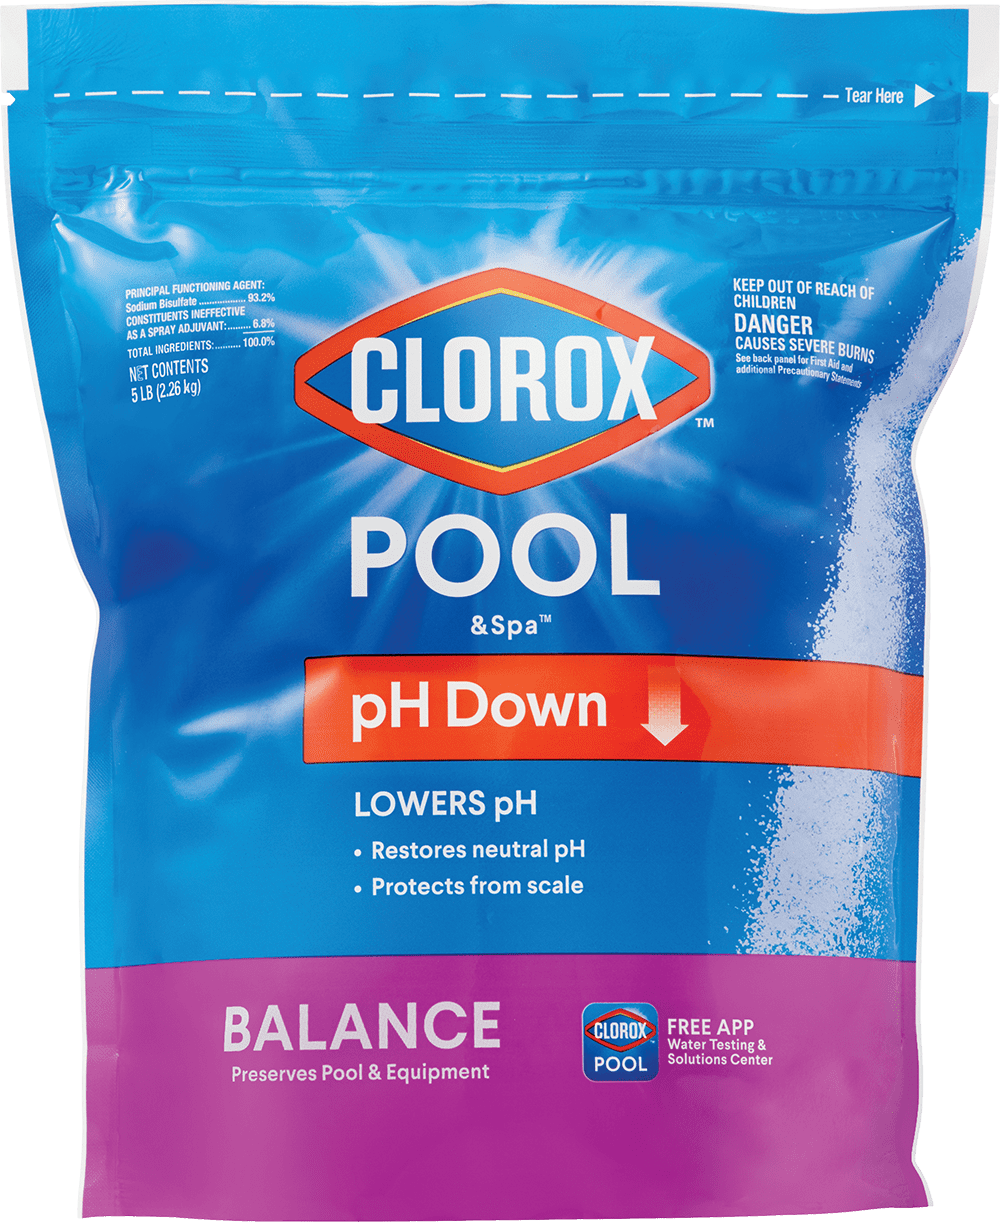 Clorox Pool&Spa pH Down, Reduces pH in Swimming Pools, 5 lb Bag, Granules